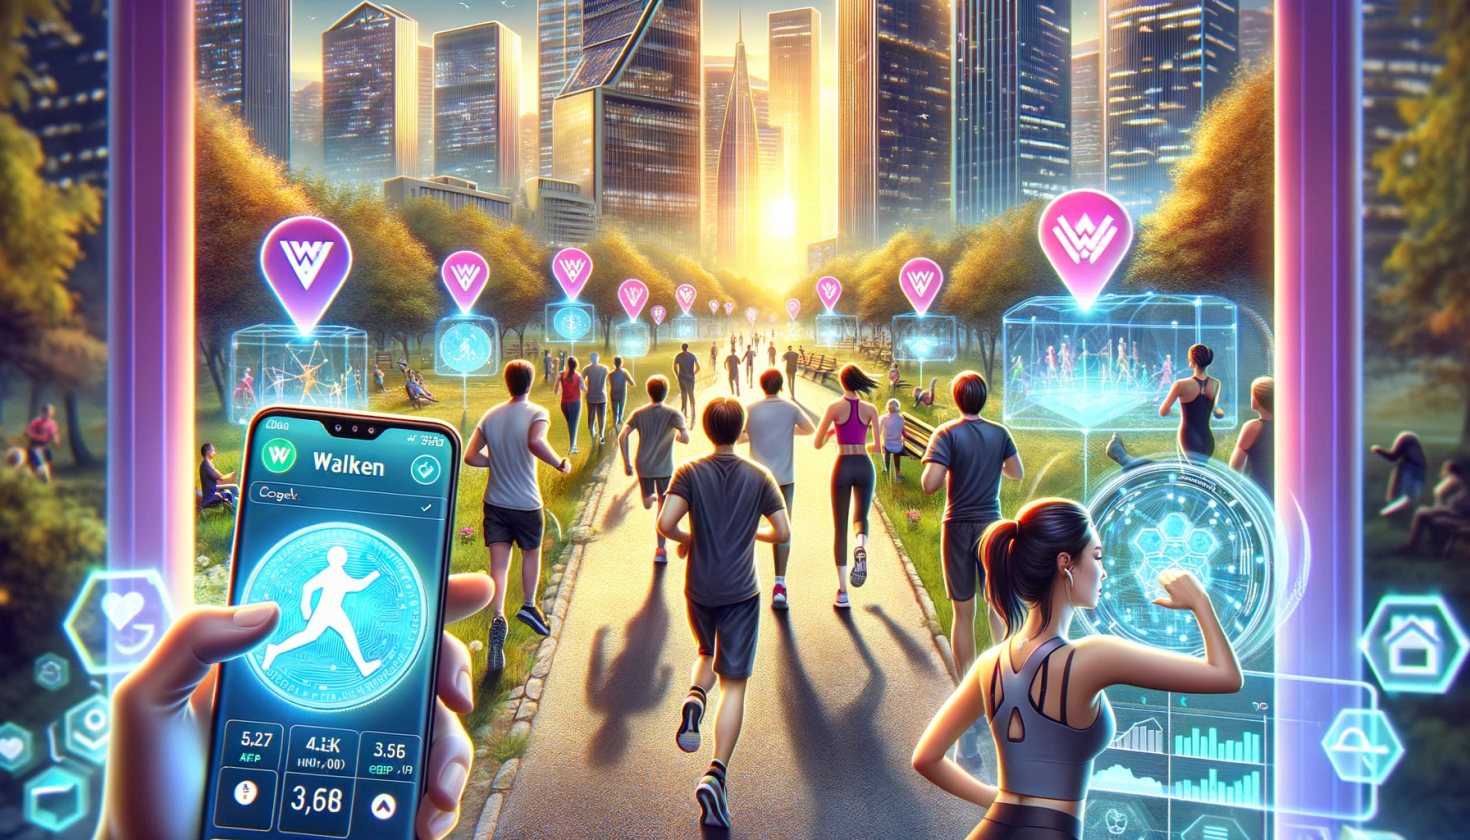 pessoas correndo em uma avenida ao fundo e em primeiro plano a tela de um celular com o app da Walken